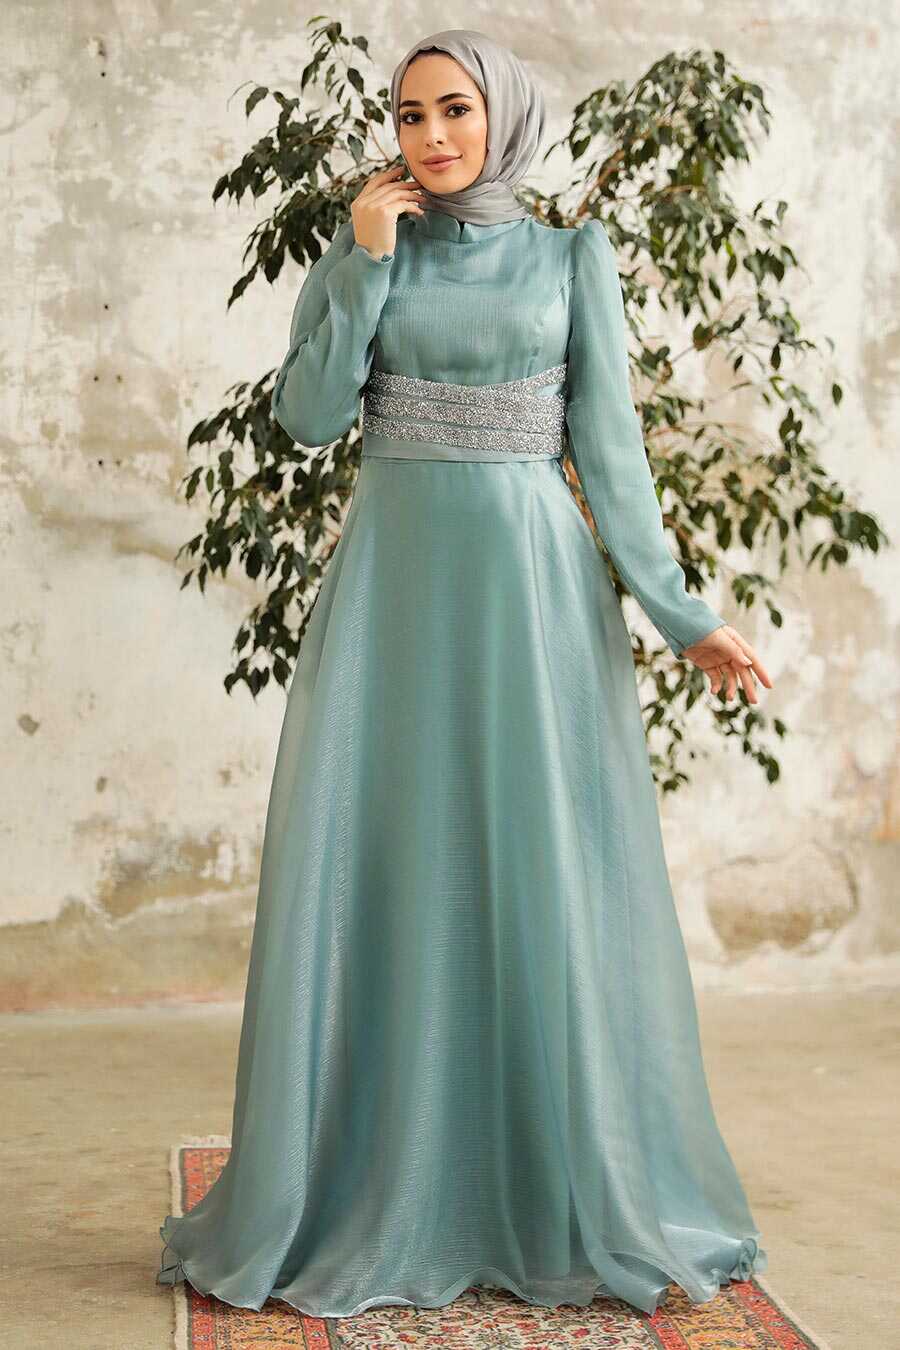 Neva Style - Elegant Turquoise Muslim Fashion Wedding Dress 3812TR